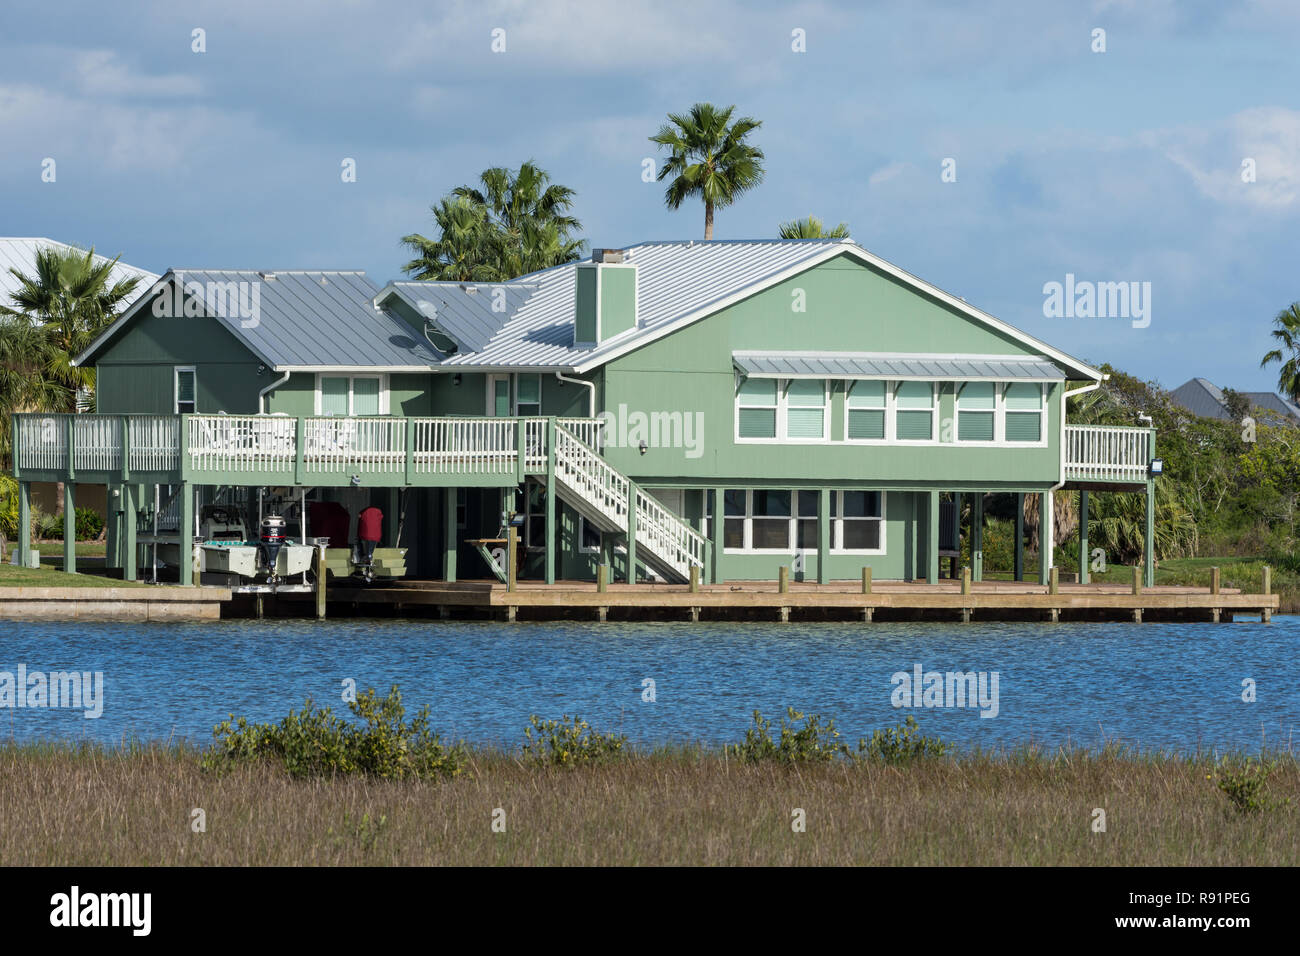 Casas residenciales invadiendo humedales costeros. Aransas National Wildlife Refuge, Texas, EE.UU. Foto de stock